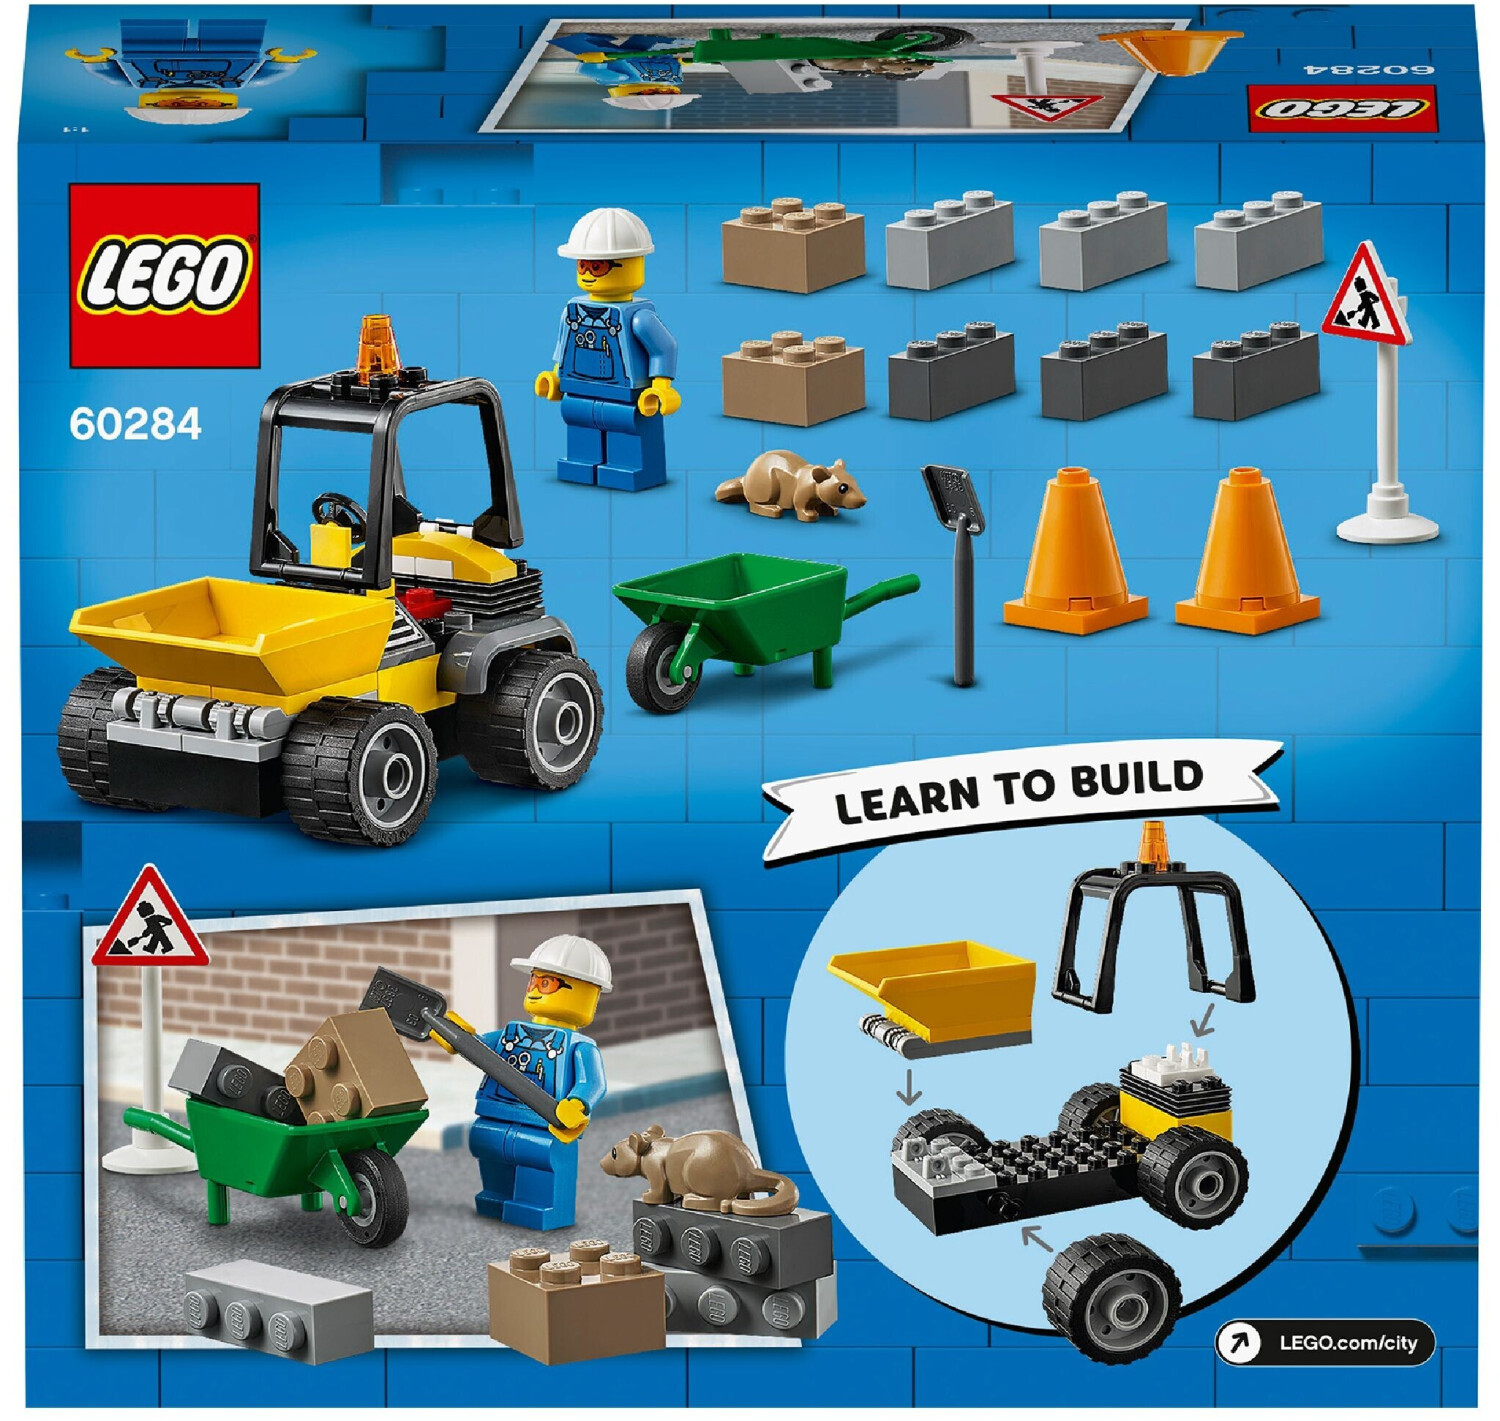 (60284) | LEGO bei Baustellen-LKW Preisvergleich 8,50 ab City: €